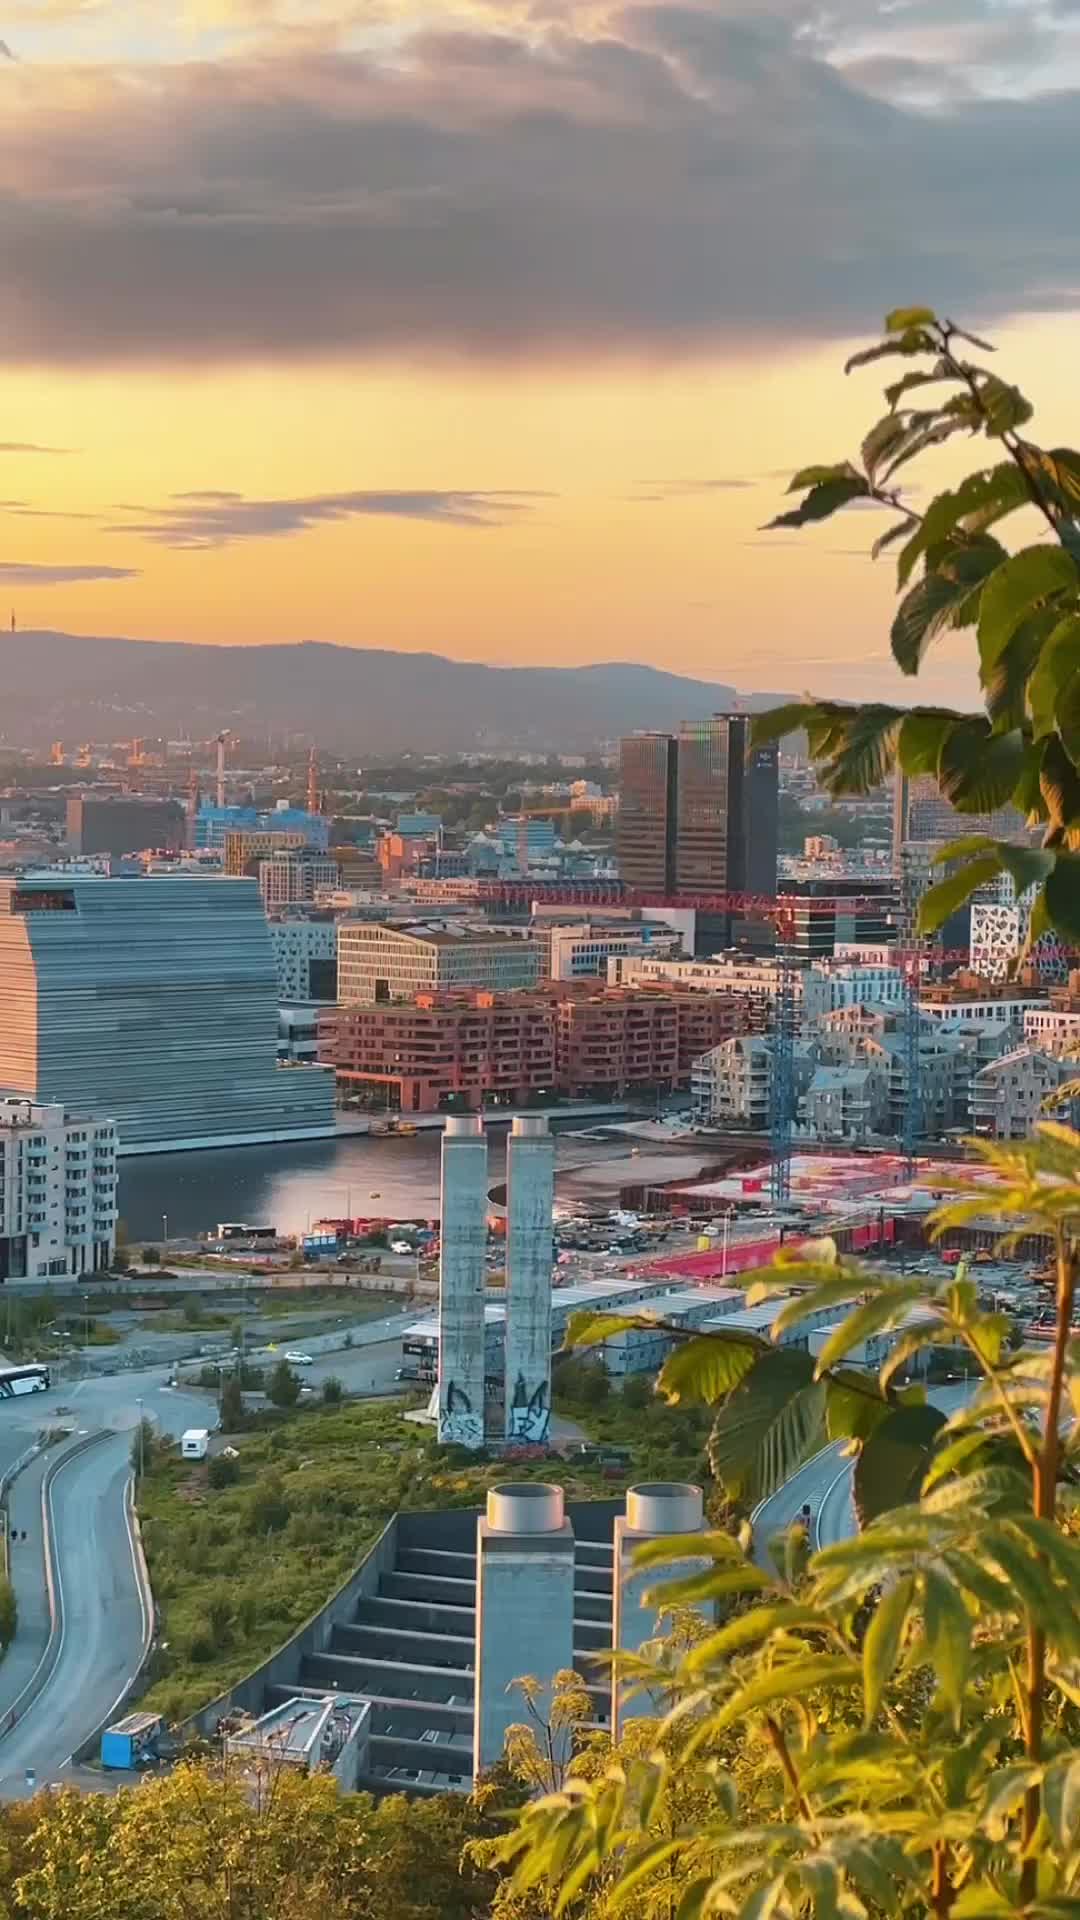 Best Sunset Spots in Oslo: Discover Ekebergparken